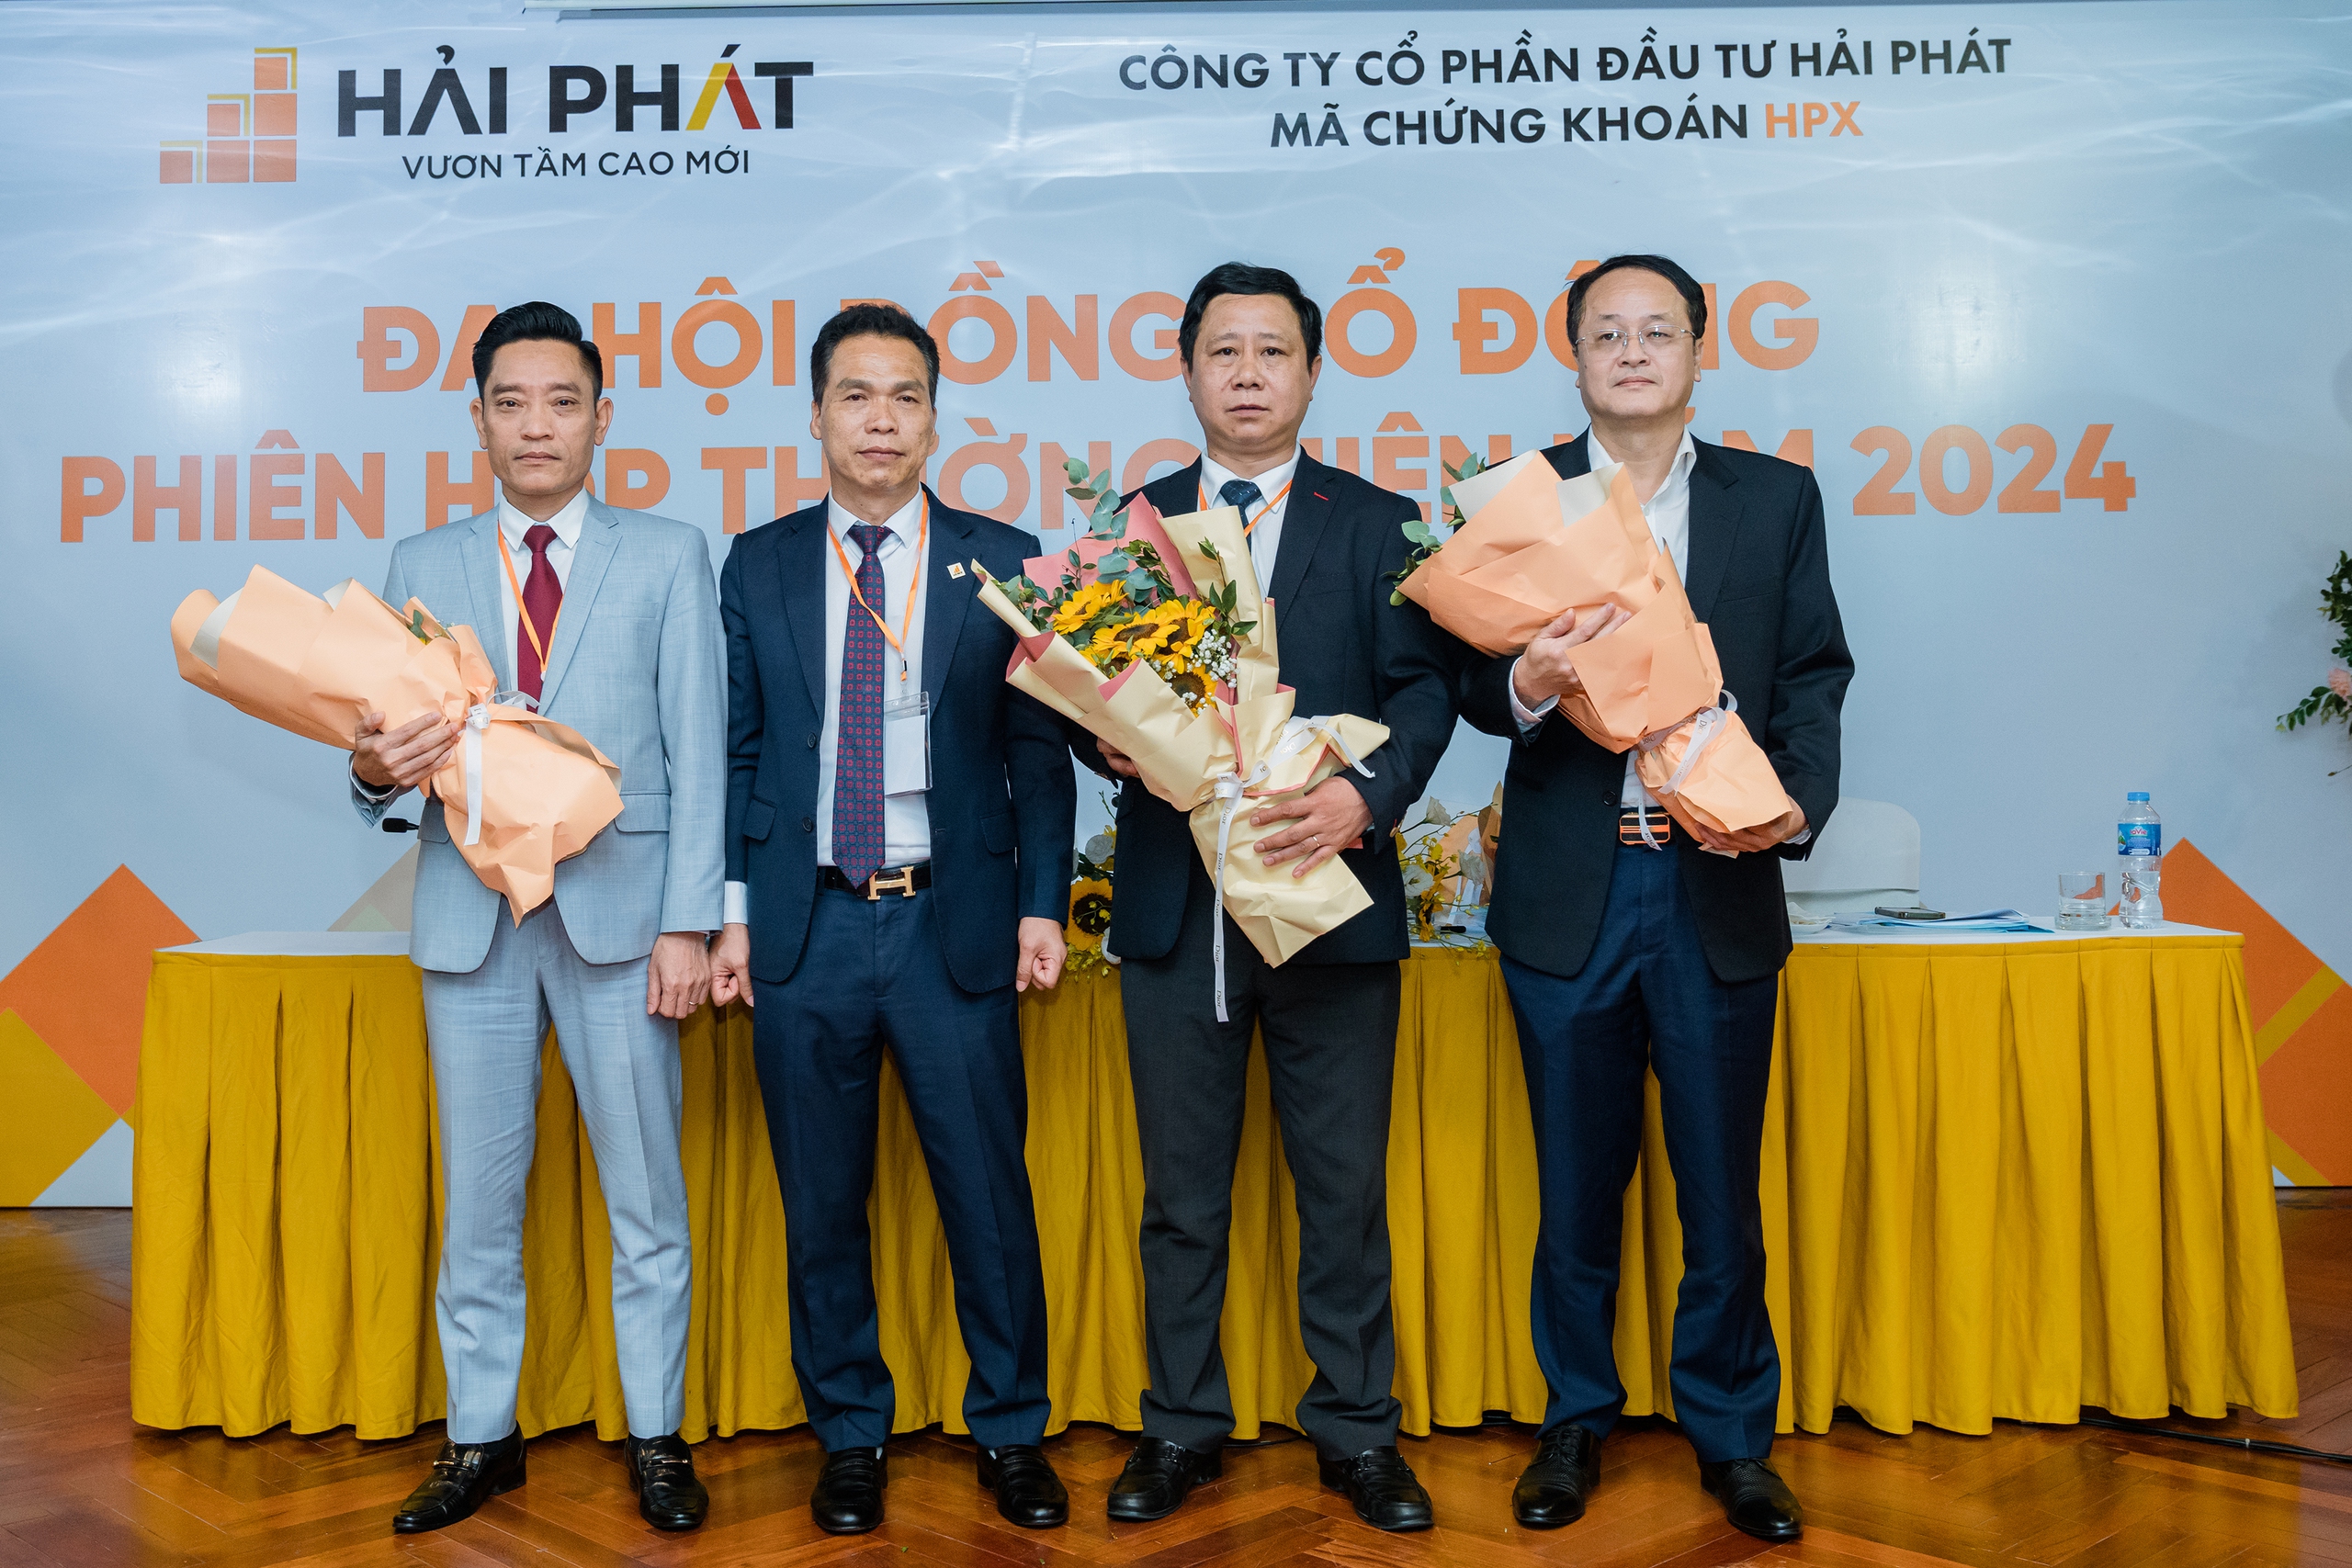 ĐHCĐ Hải Phát Invest: Đồng loạt triển khai các dự án tại Quảng Ninh, Hòa Bình, Bắc Giang, Cao Bằng...trong năm 2024- Ảnh 2.